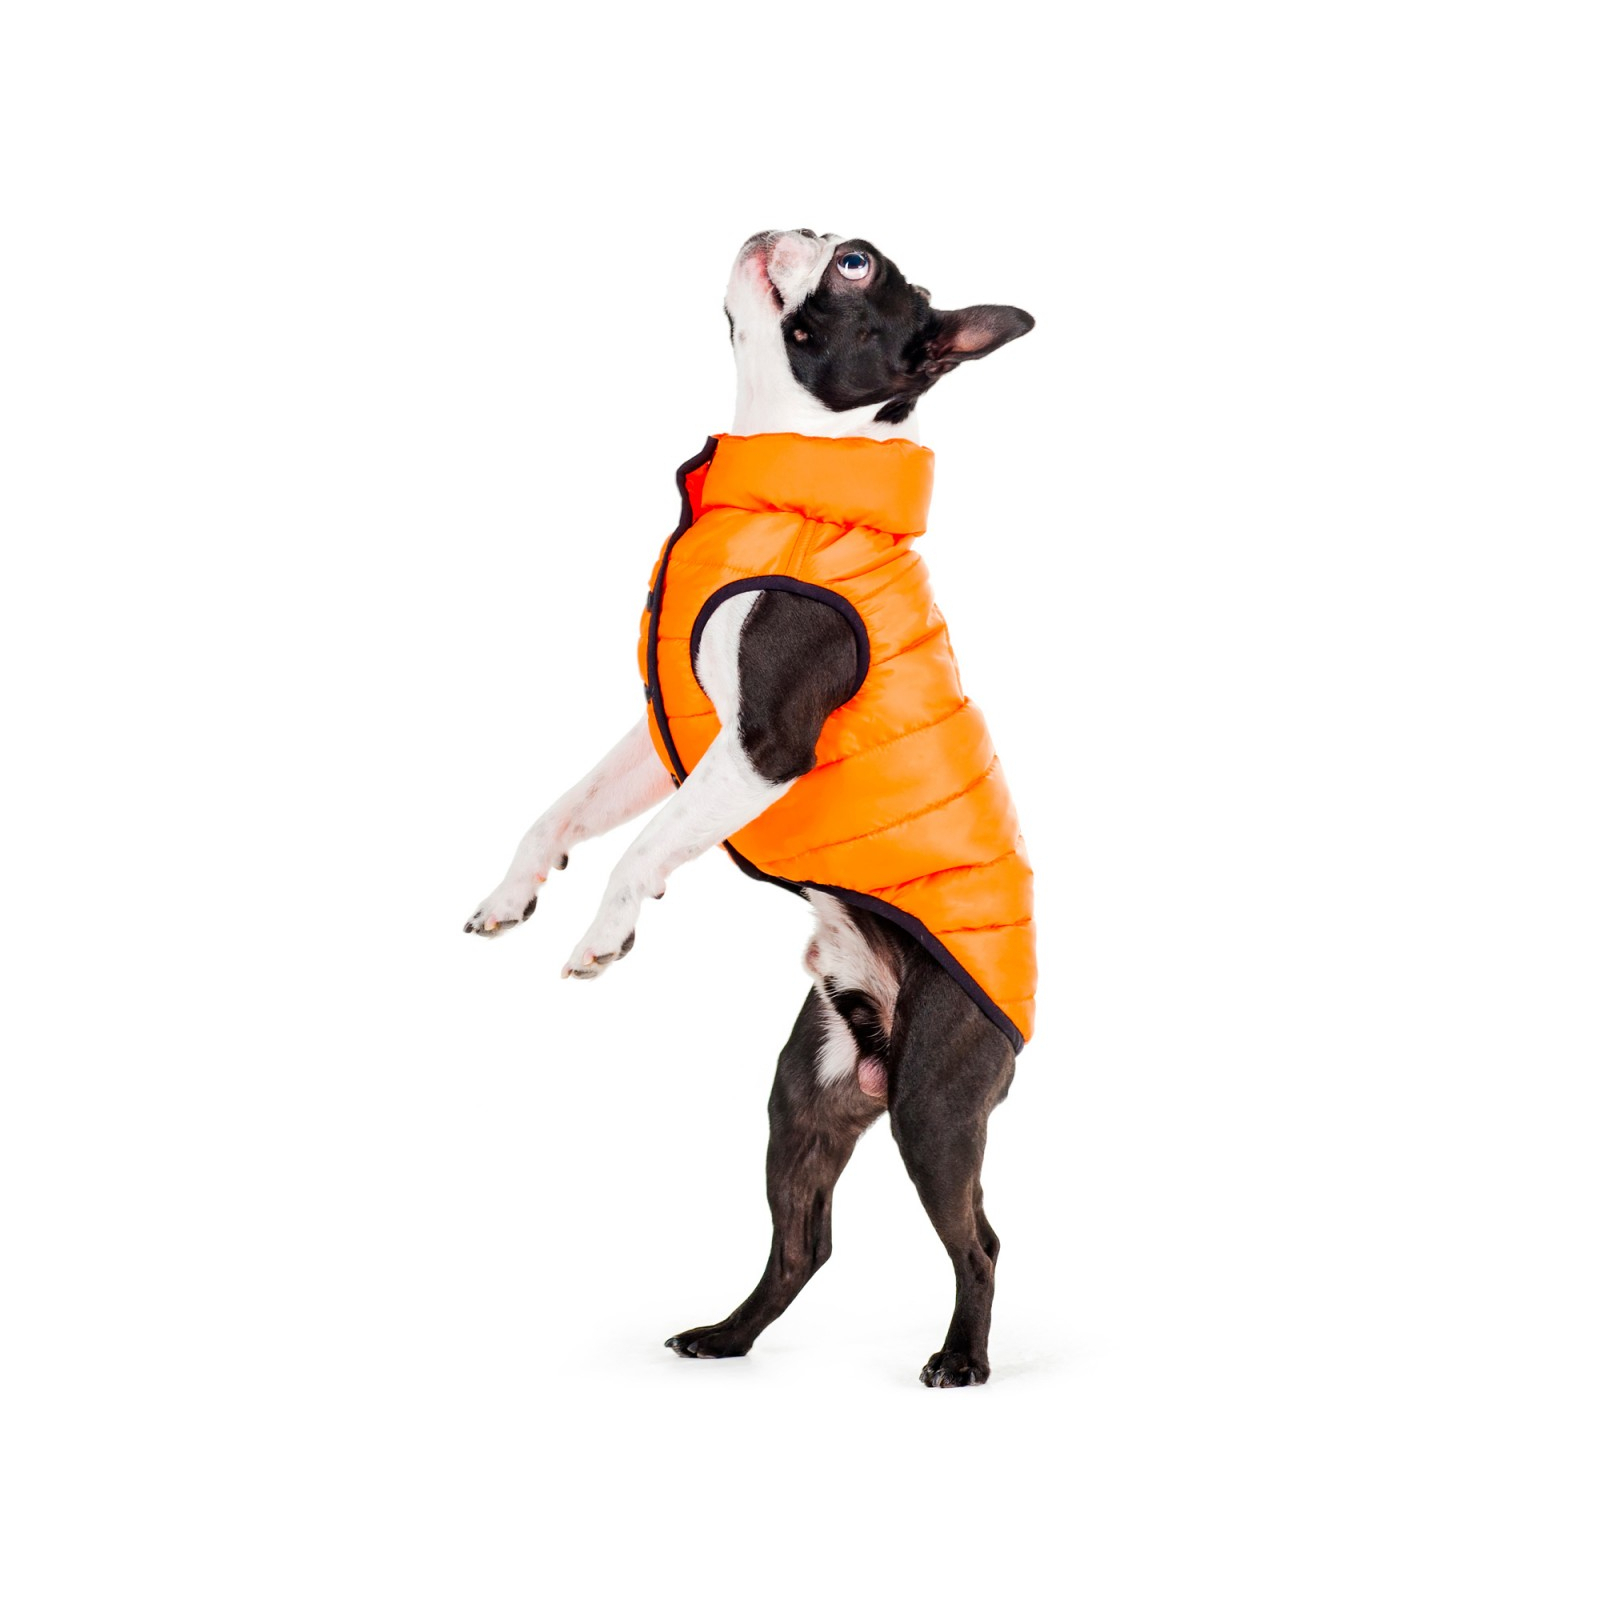 Курточка для животных Airy Vest One М 47 оранжевая (20694) изображение 2